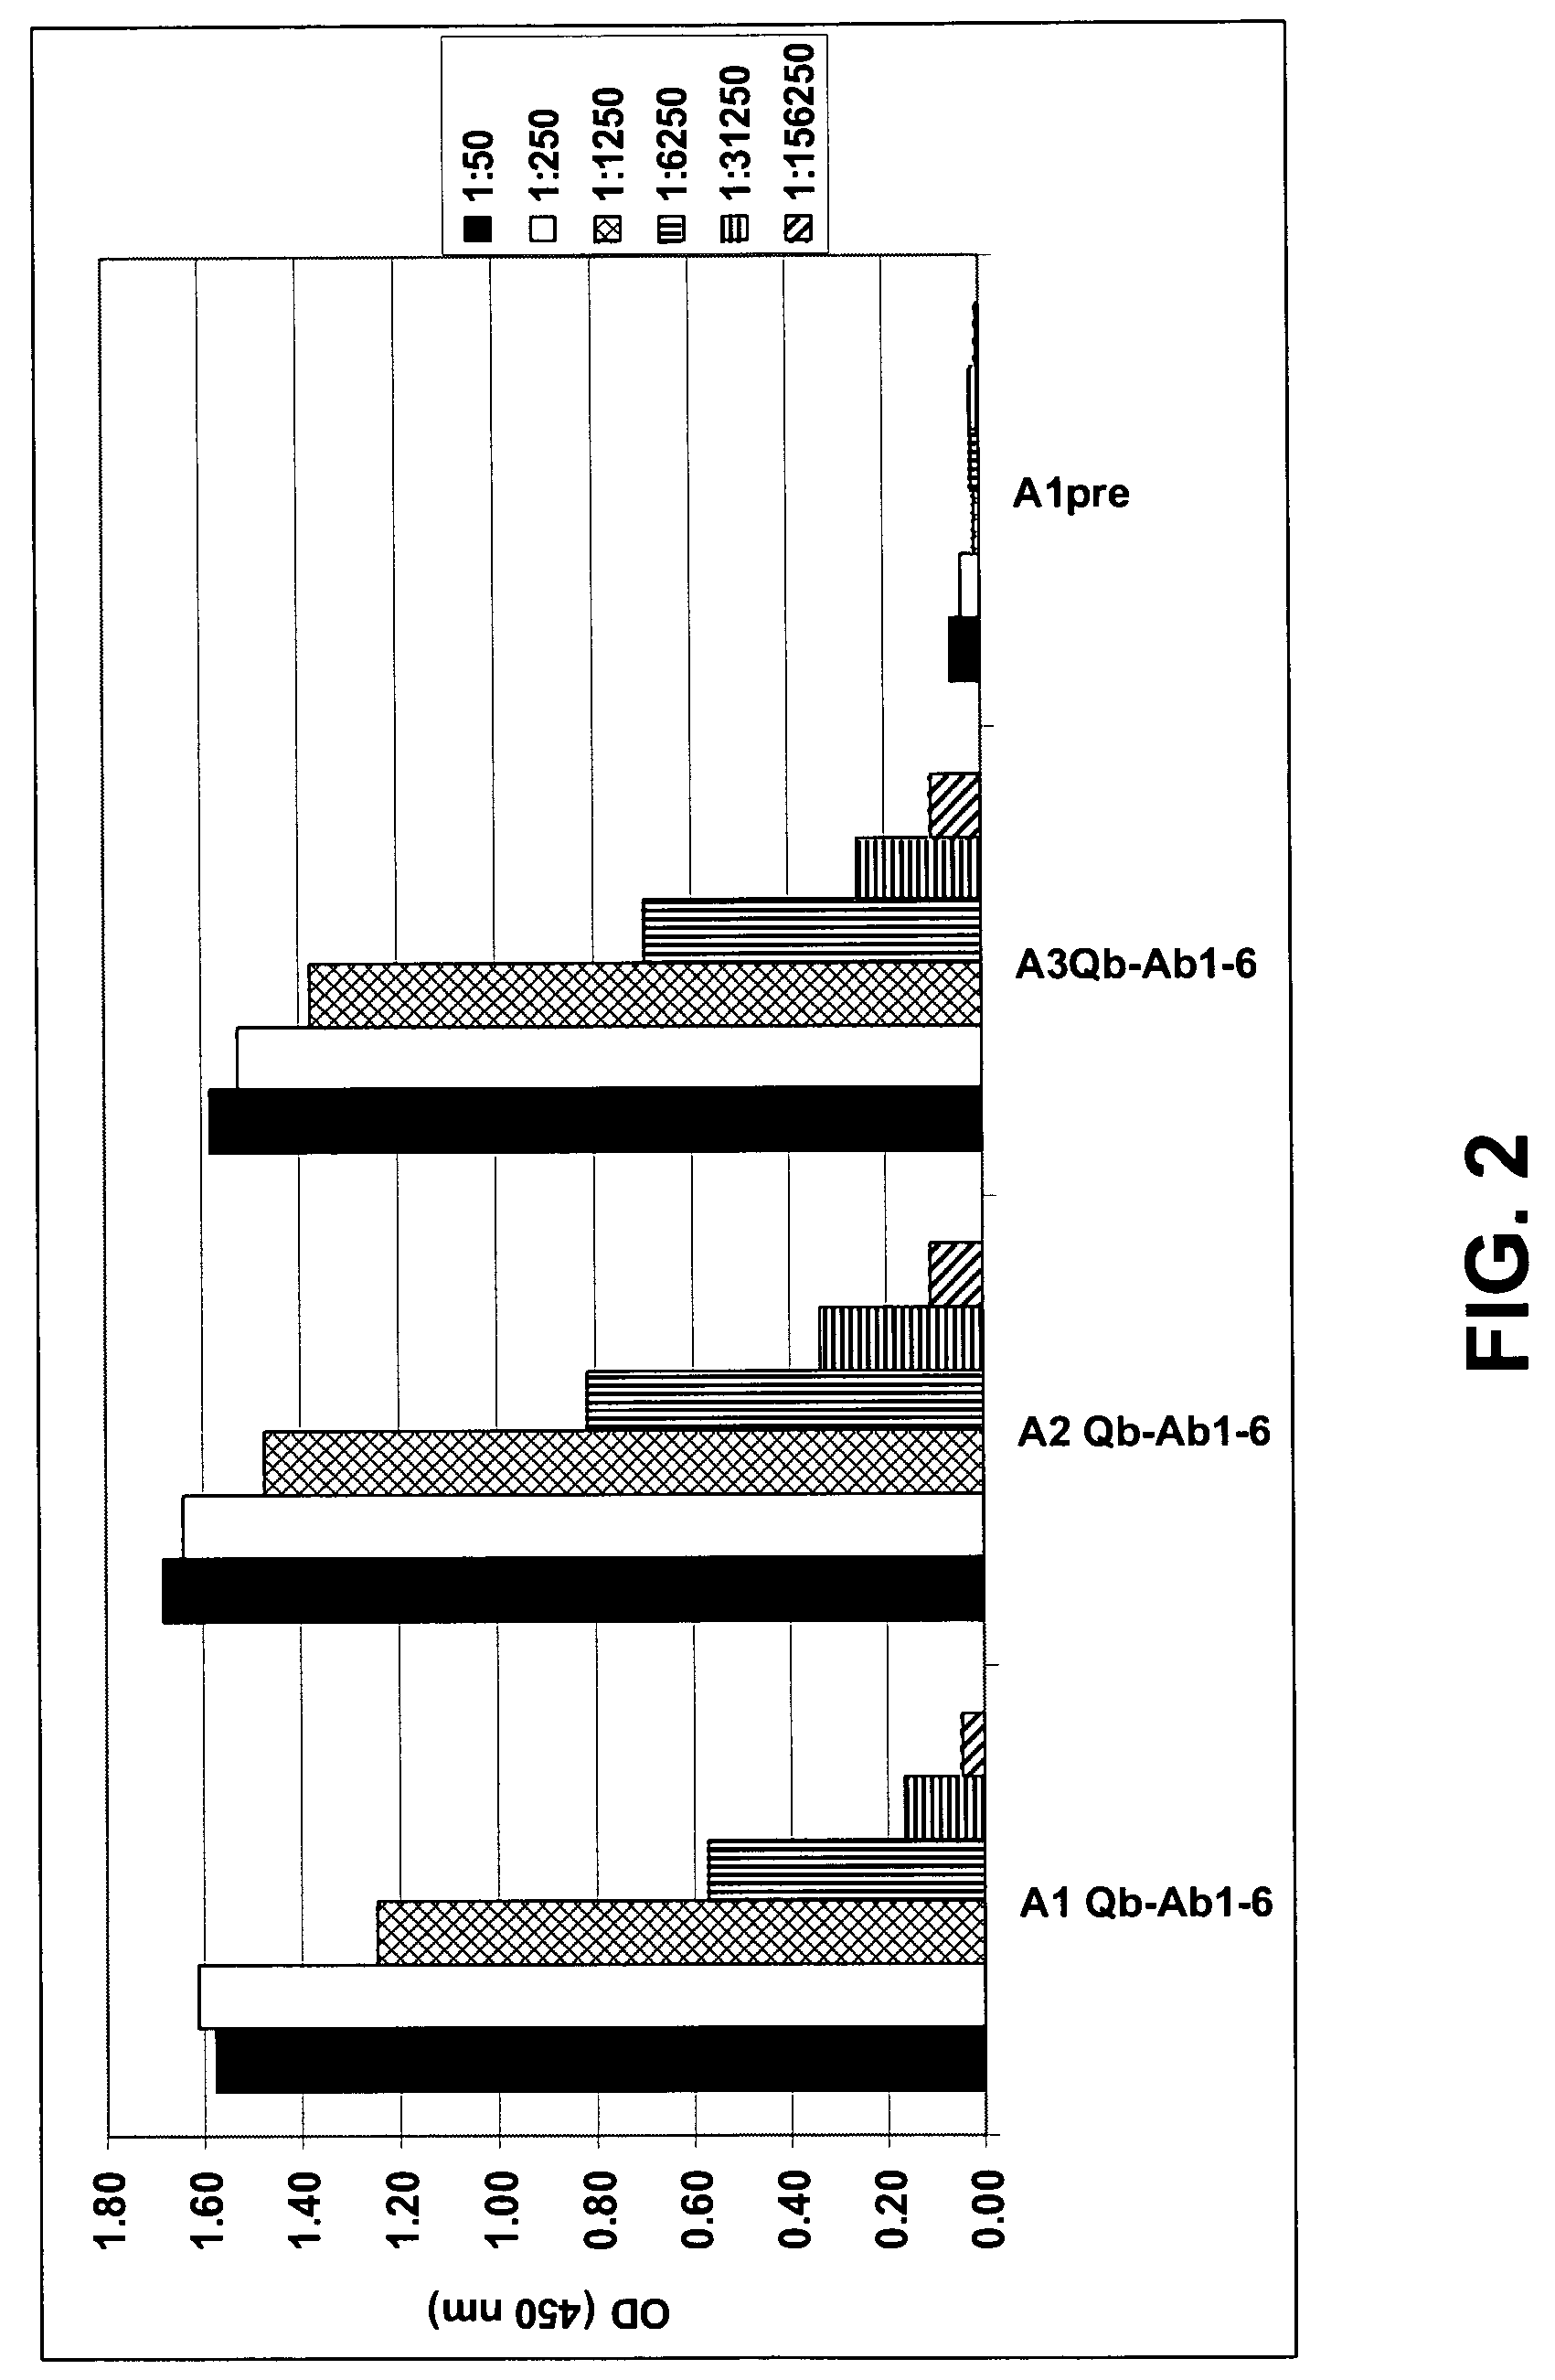 Amyloid β1-6 antigen arrays